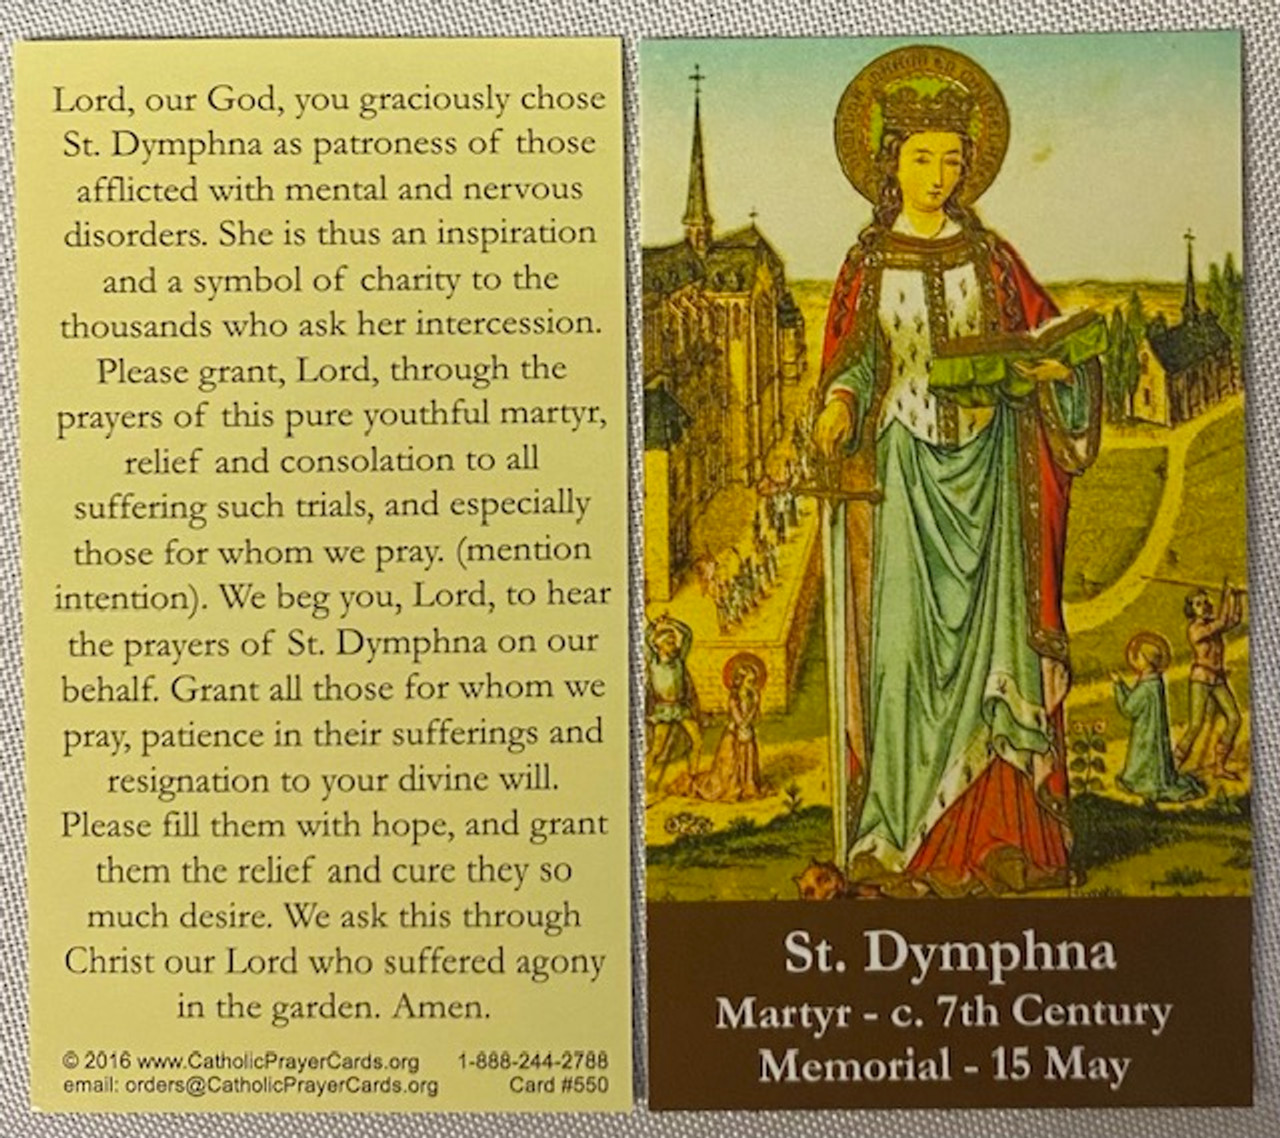 St. Dymphna Prayer Card - Martyr